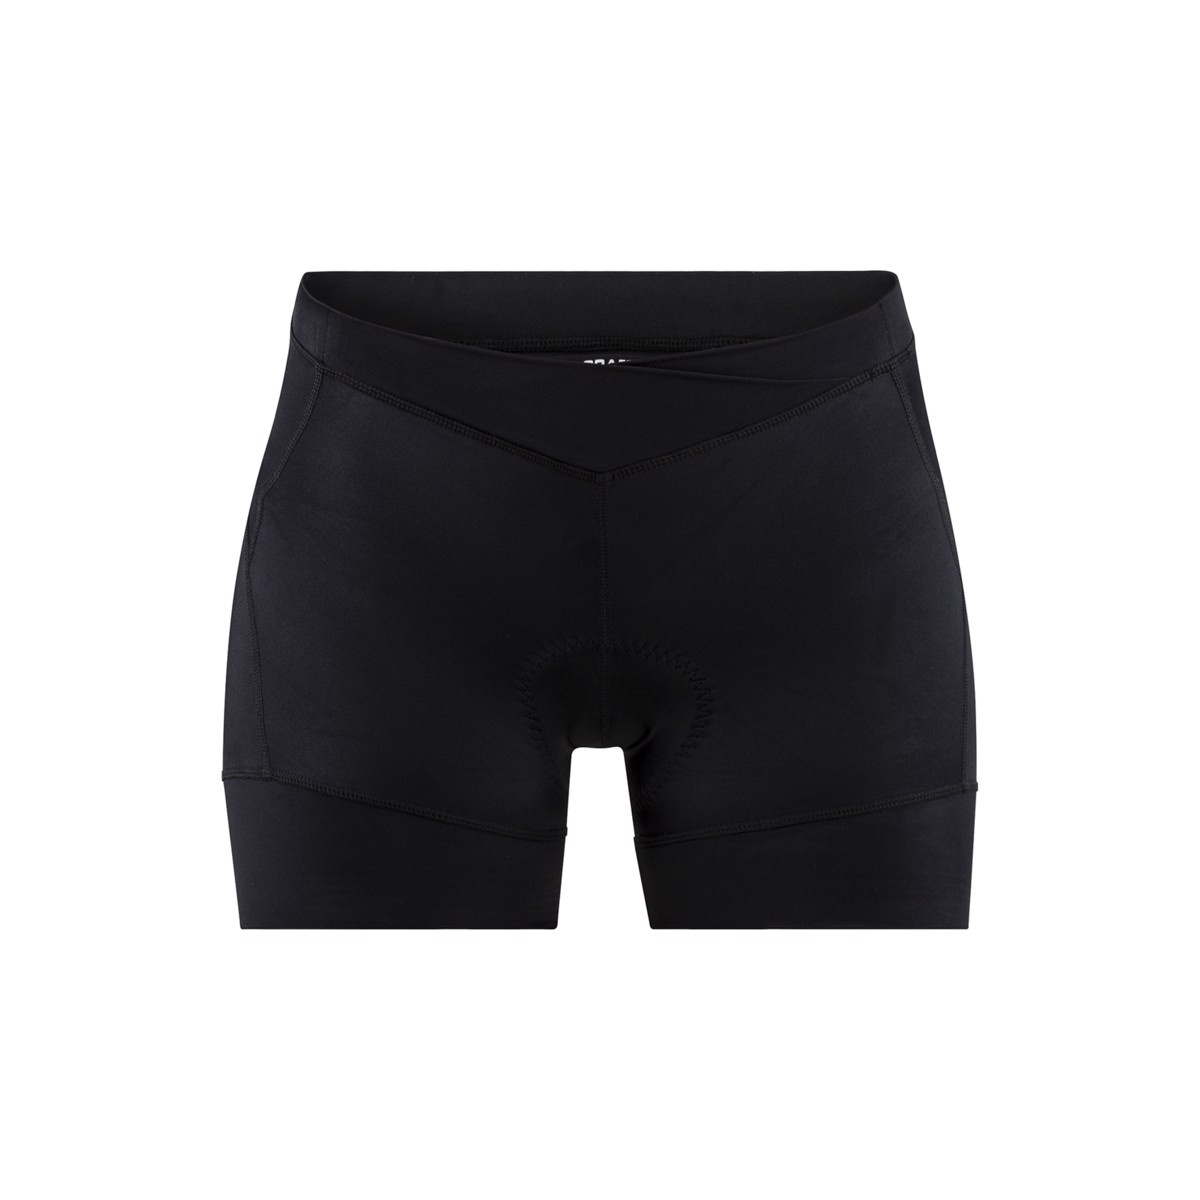 Dámské krátké cyklistické kalhoty CRAFT Essence Hot černá M